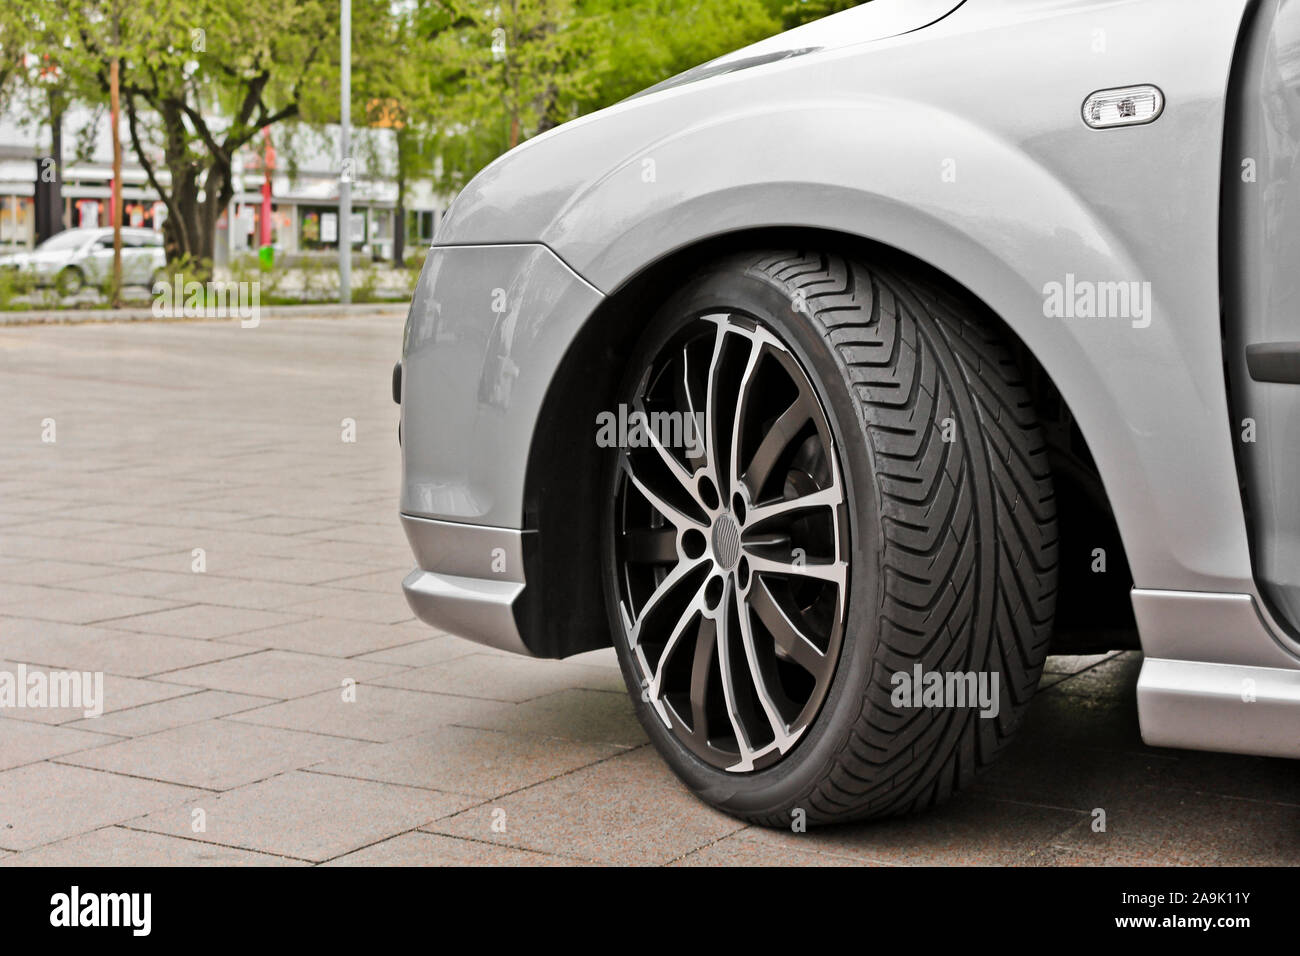 Schönes Räder und Felgen für ein sportliches Auto in grau oder silber.  Leherheide Bremerhaven, Deutschland Stockfotografie - Alamy